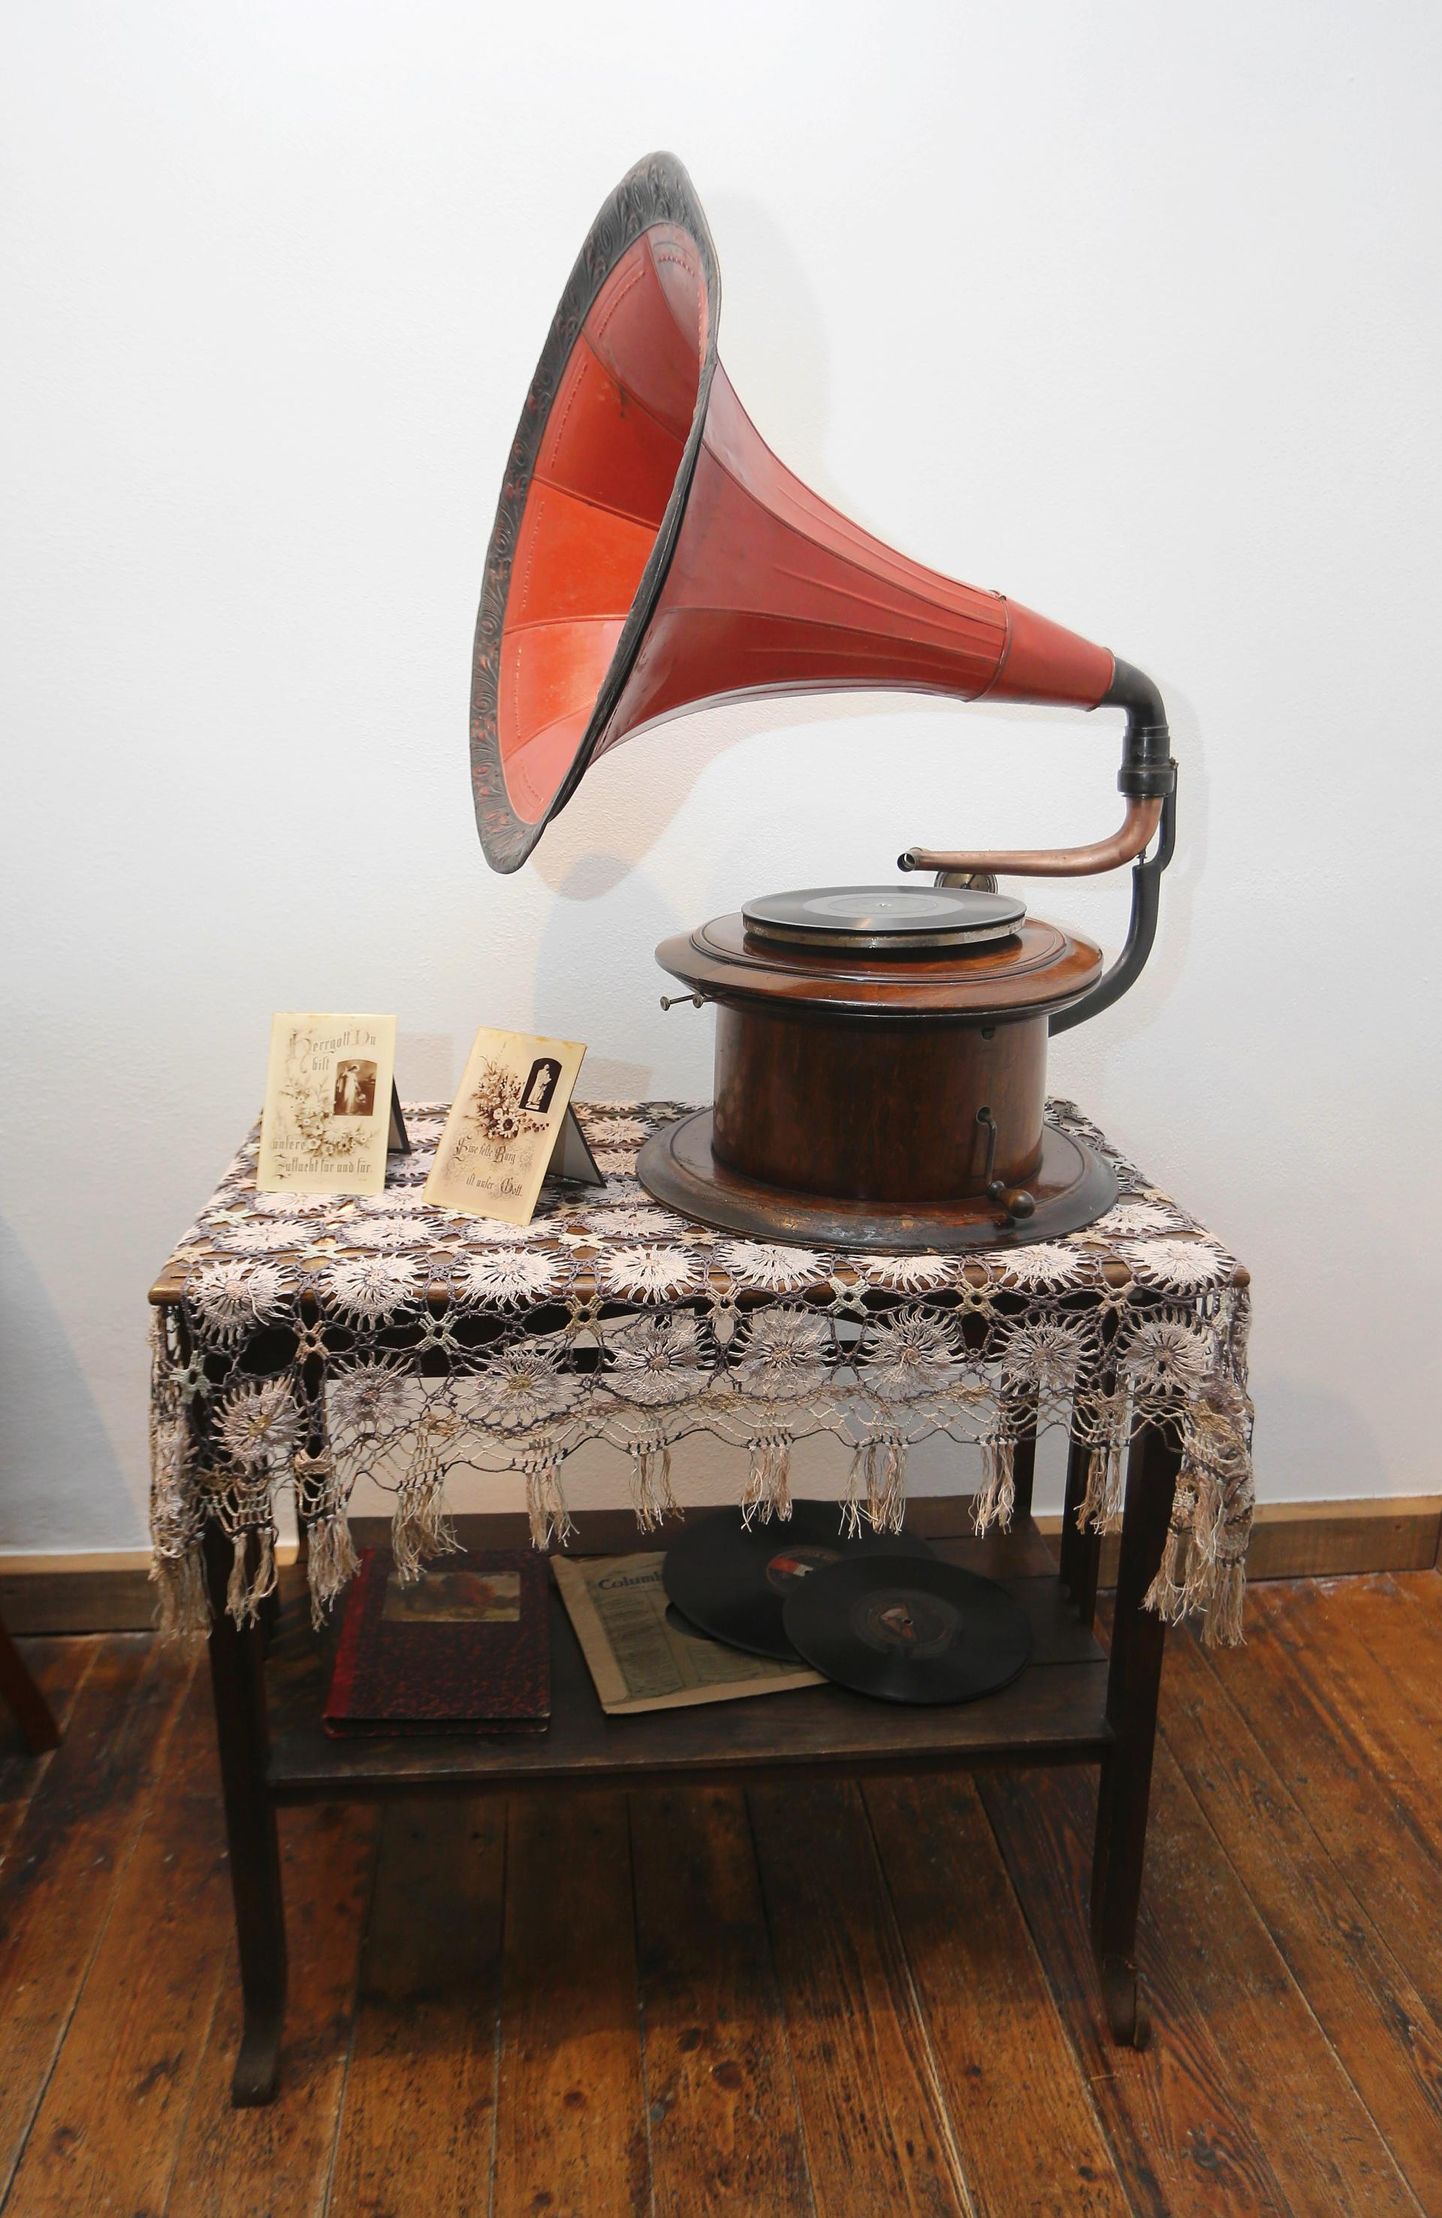 Grammofon.